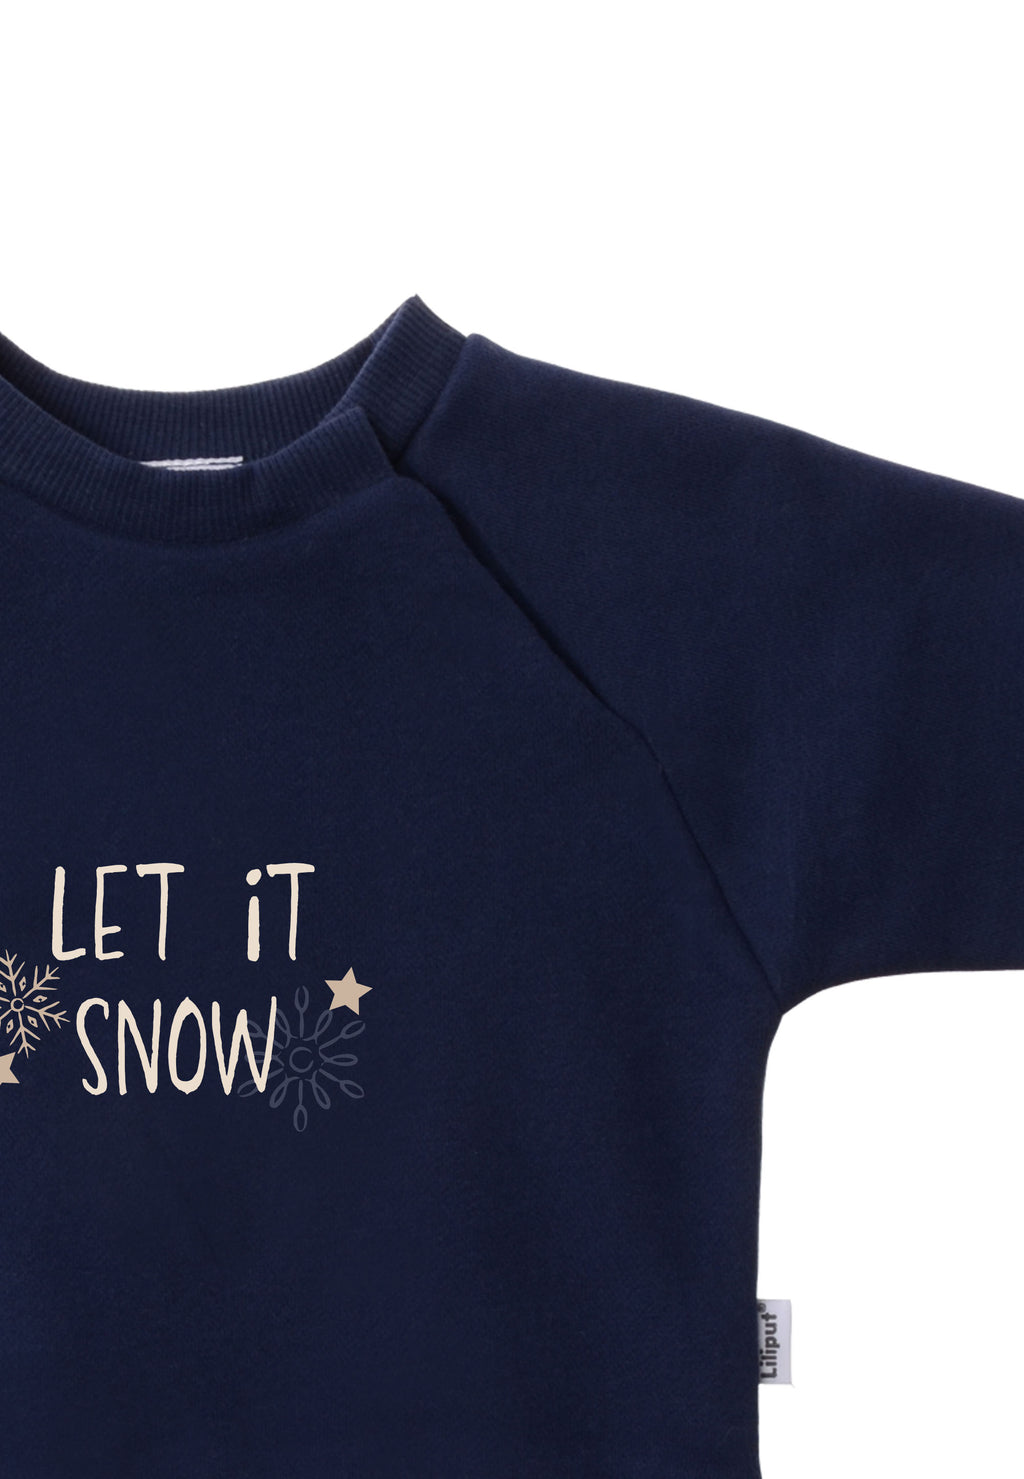 Sweatshirt in navy mit "let it snow" Wording.